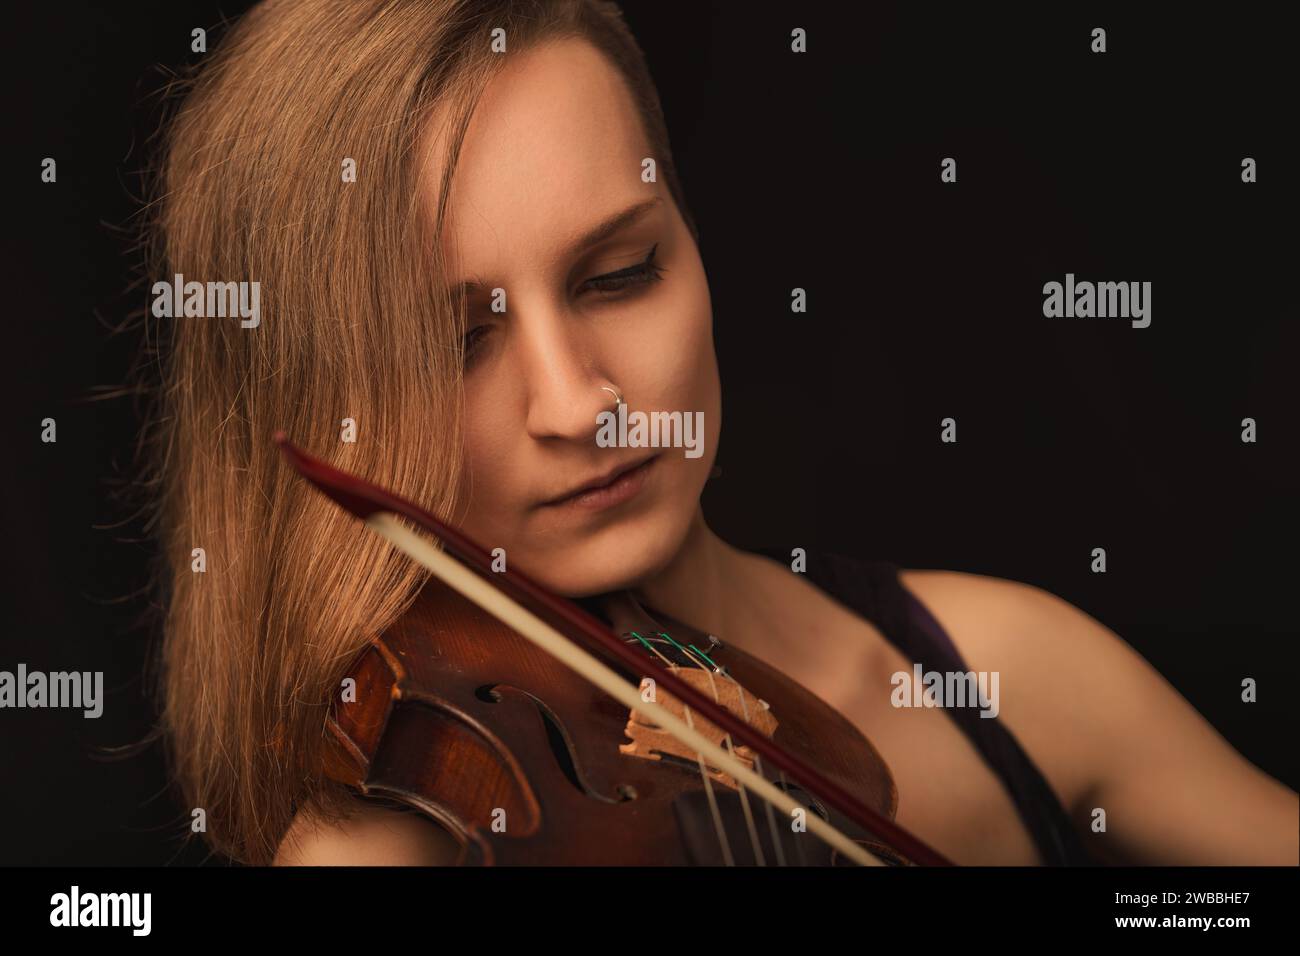 violoniste imprégnée de sa musique, chaque note reflétait sa contemplation silencieuse Banque D'Images